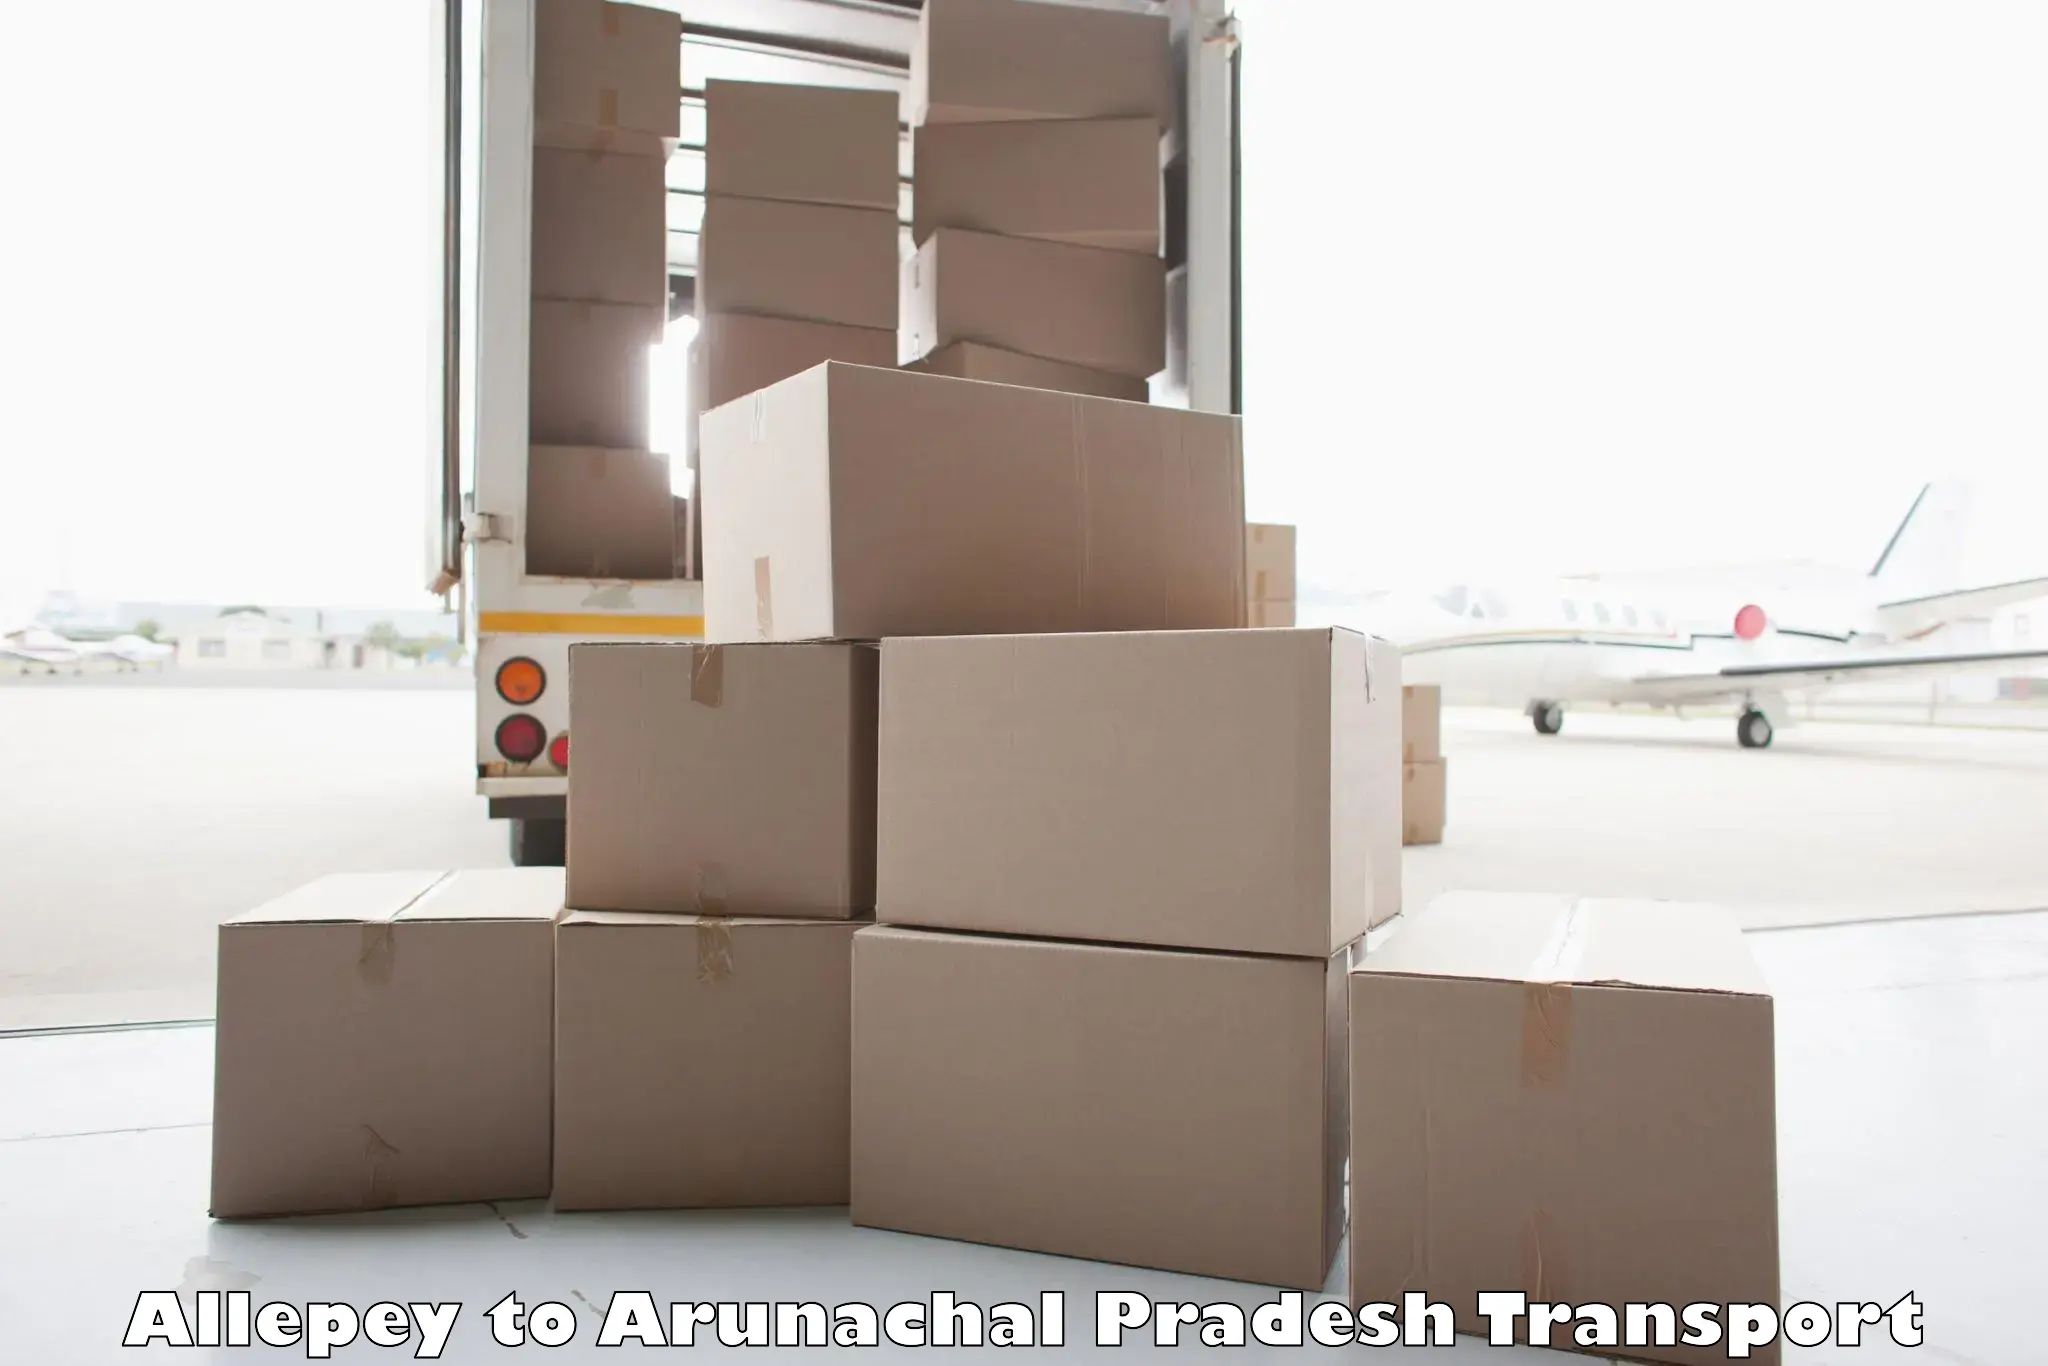 Parcel transport services Allepey to Arunachal Pradesh